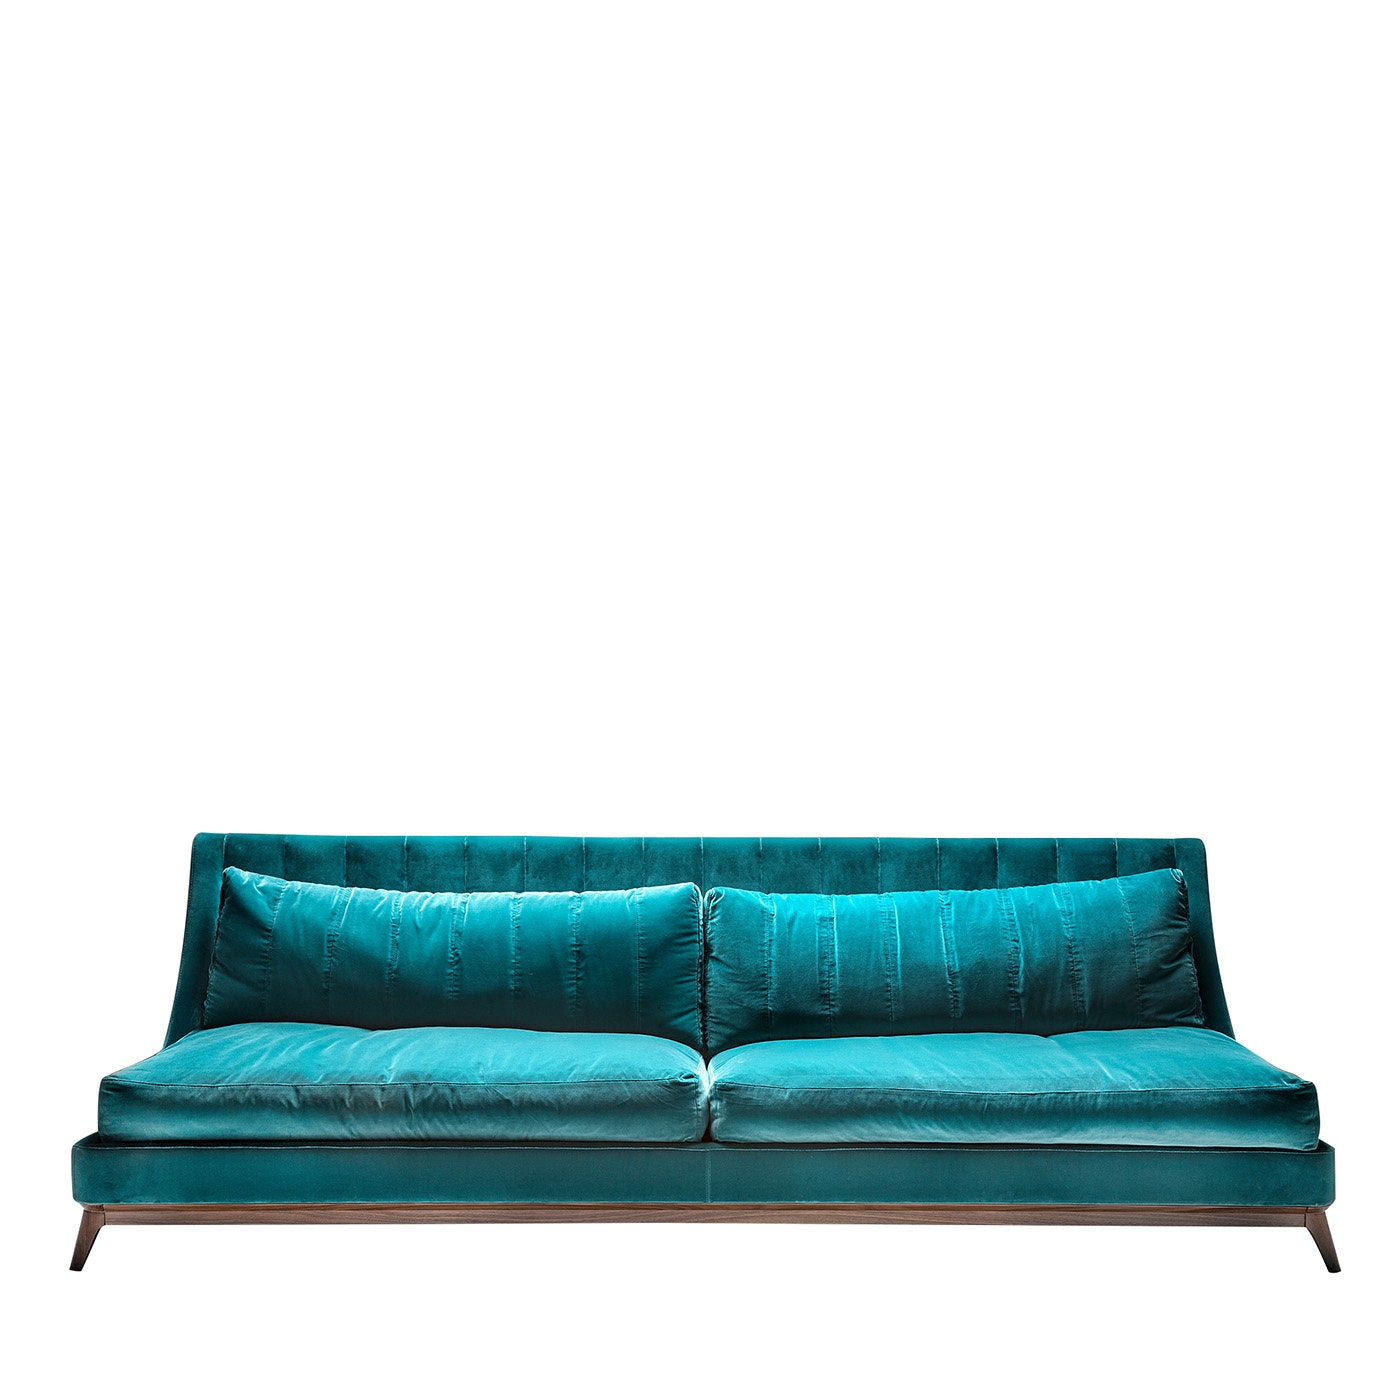 Galatea 3-Seater Sofa by Giovanna Azzarello - Main view